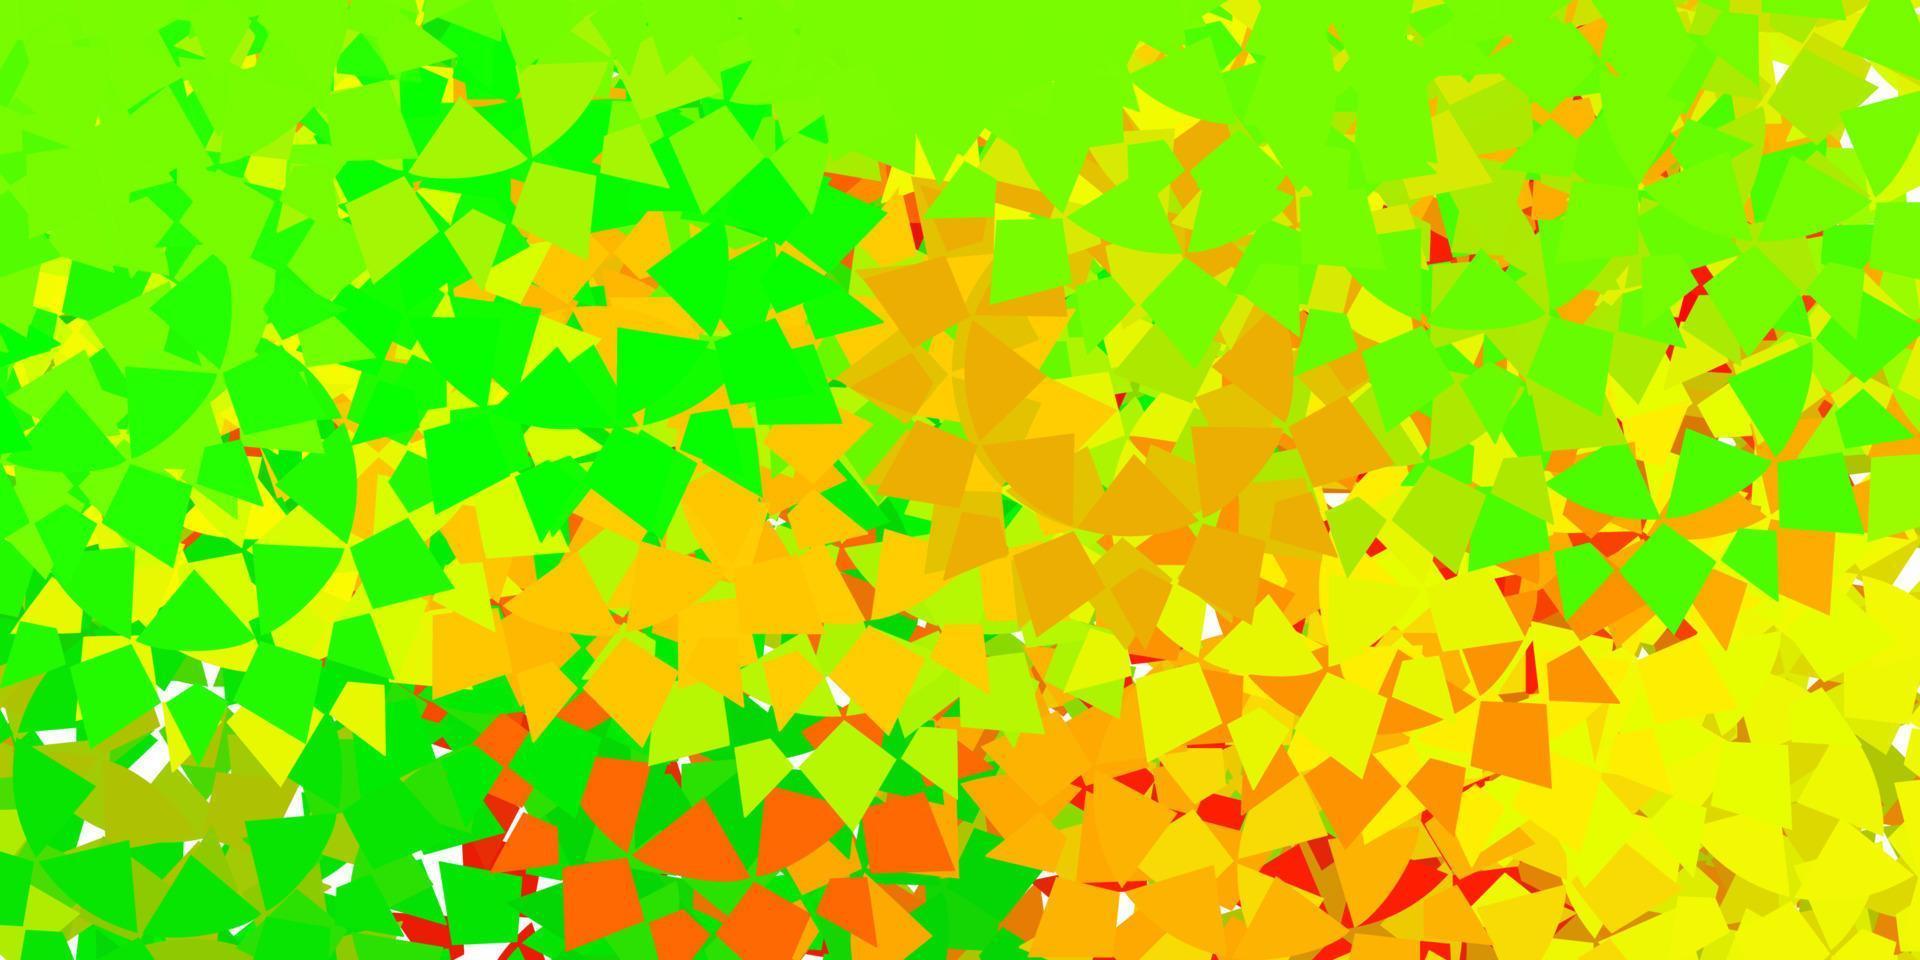 Fondo de vector verde oscuro, amarillo con formas poligonales.